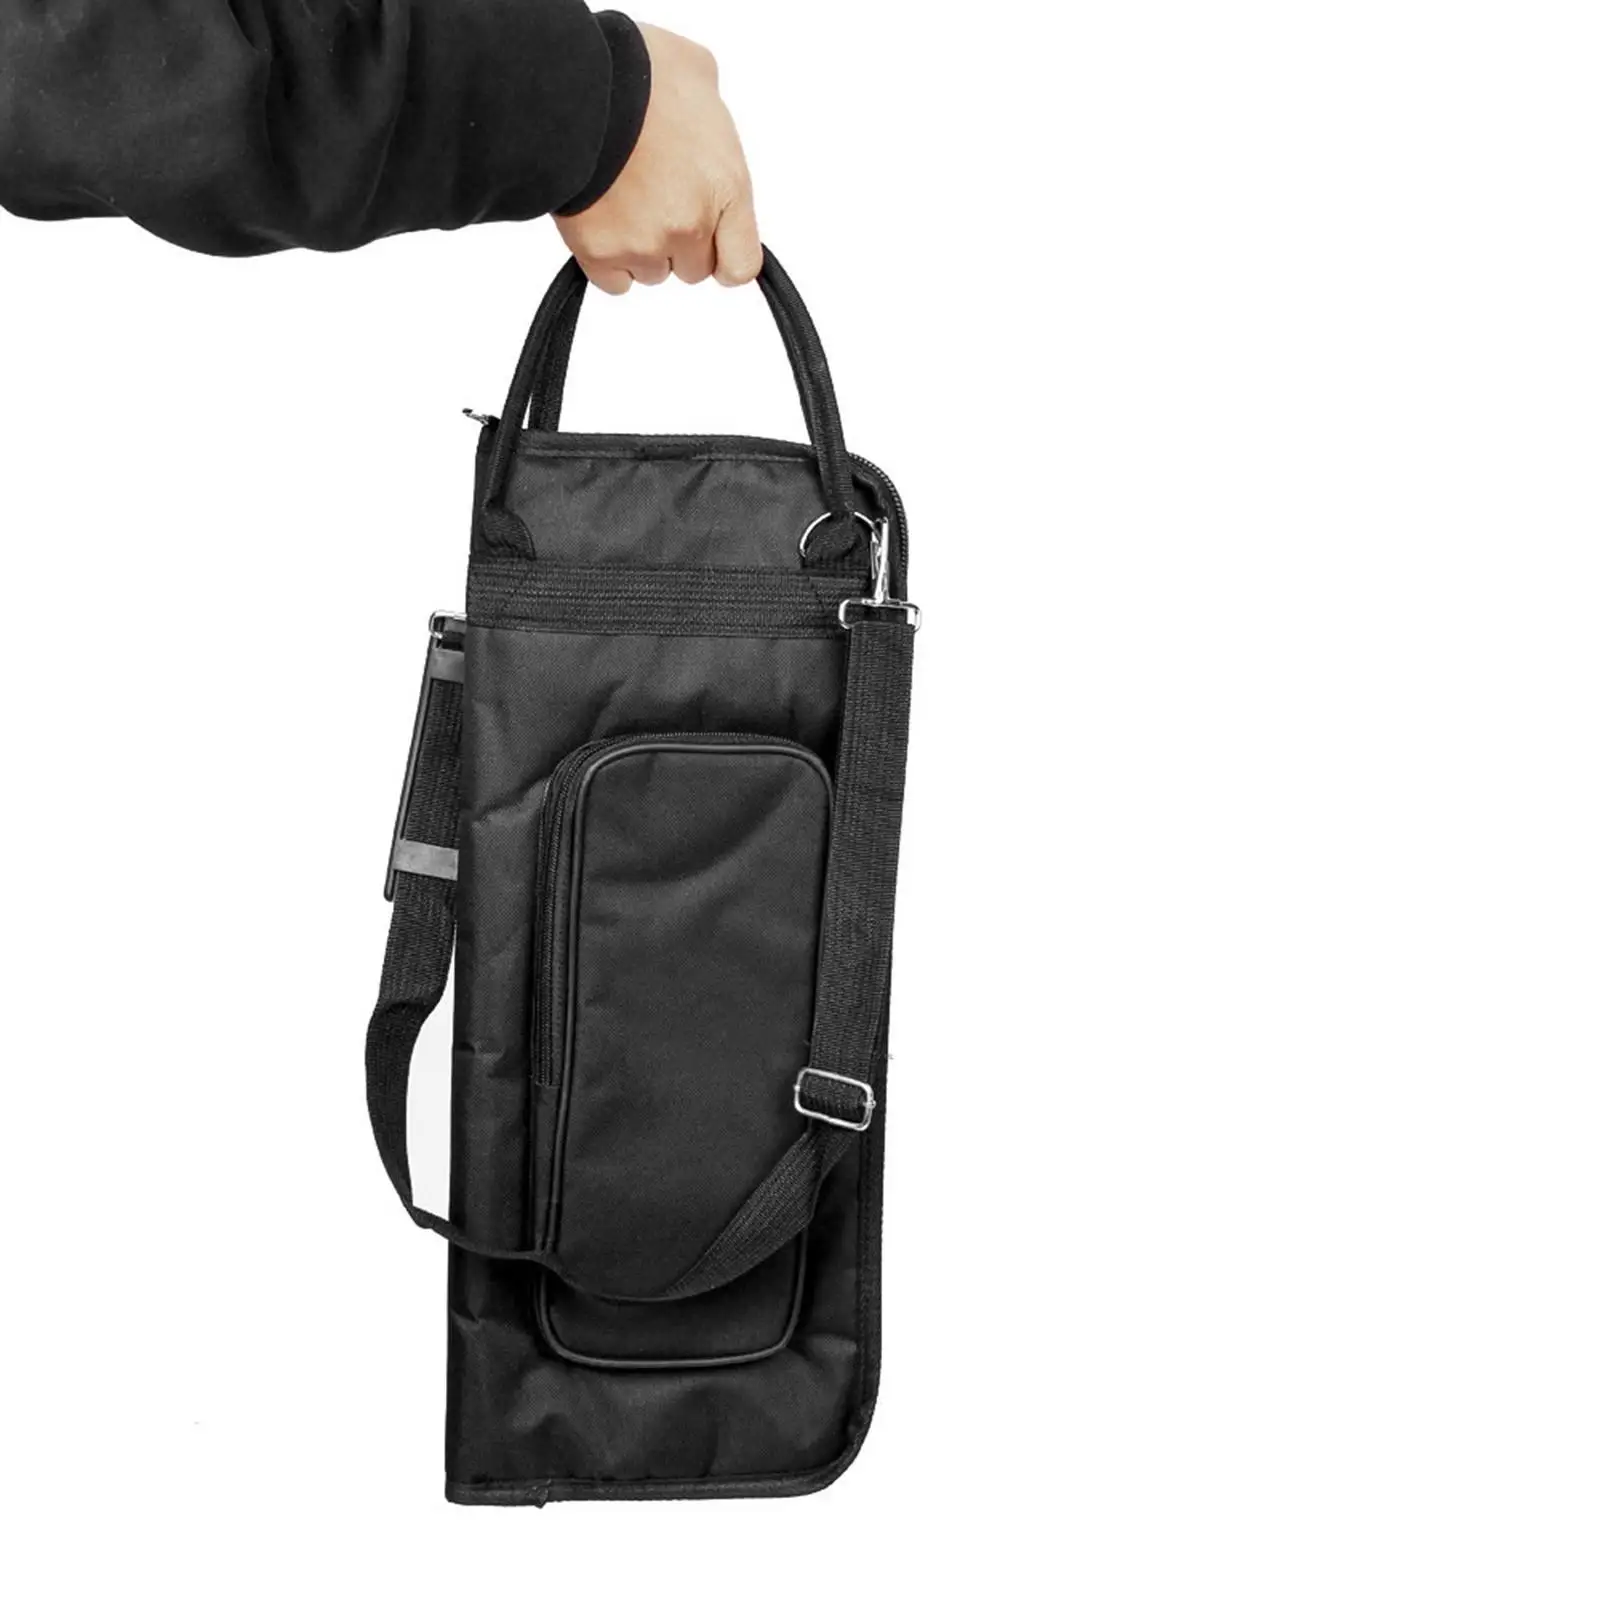 Adjustable Drum Mallet Storage Bag Drumstick Case Cover 5 Pockets for Travel